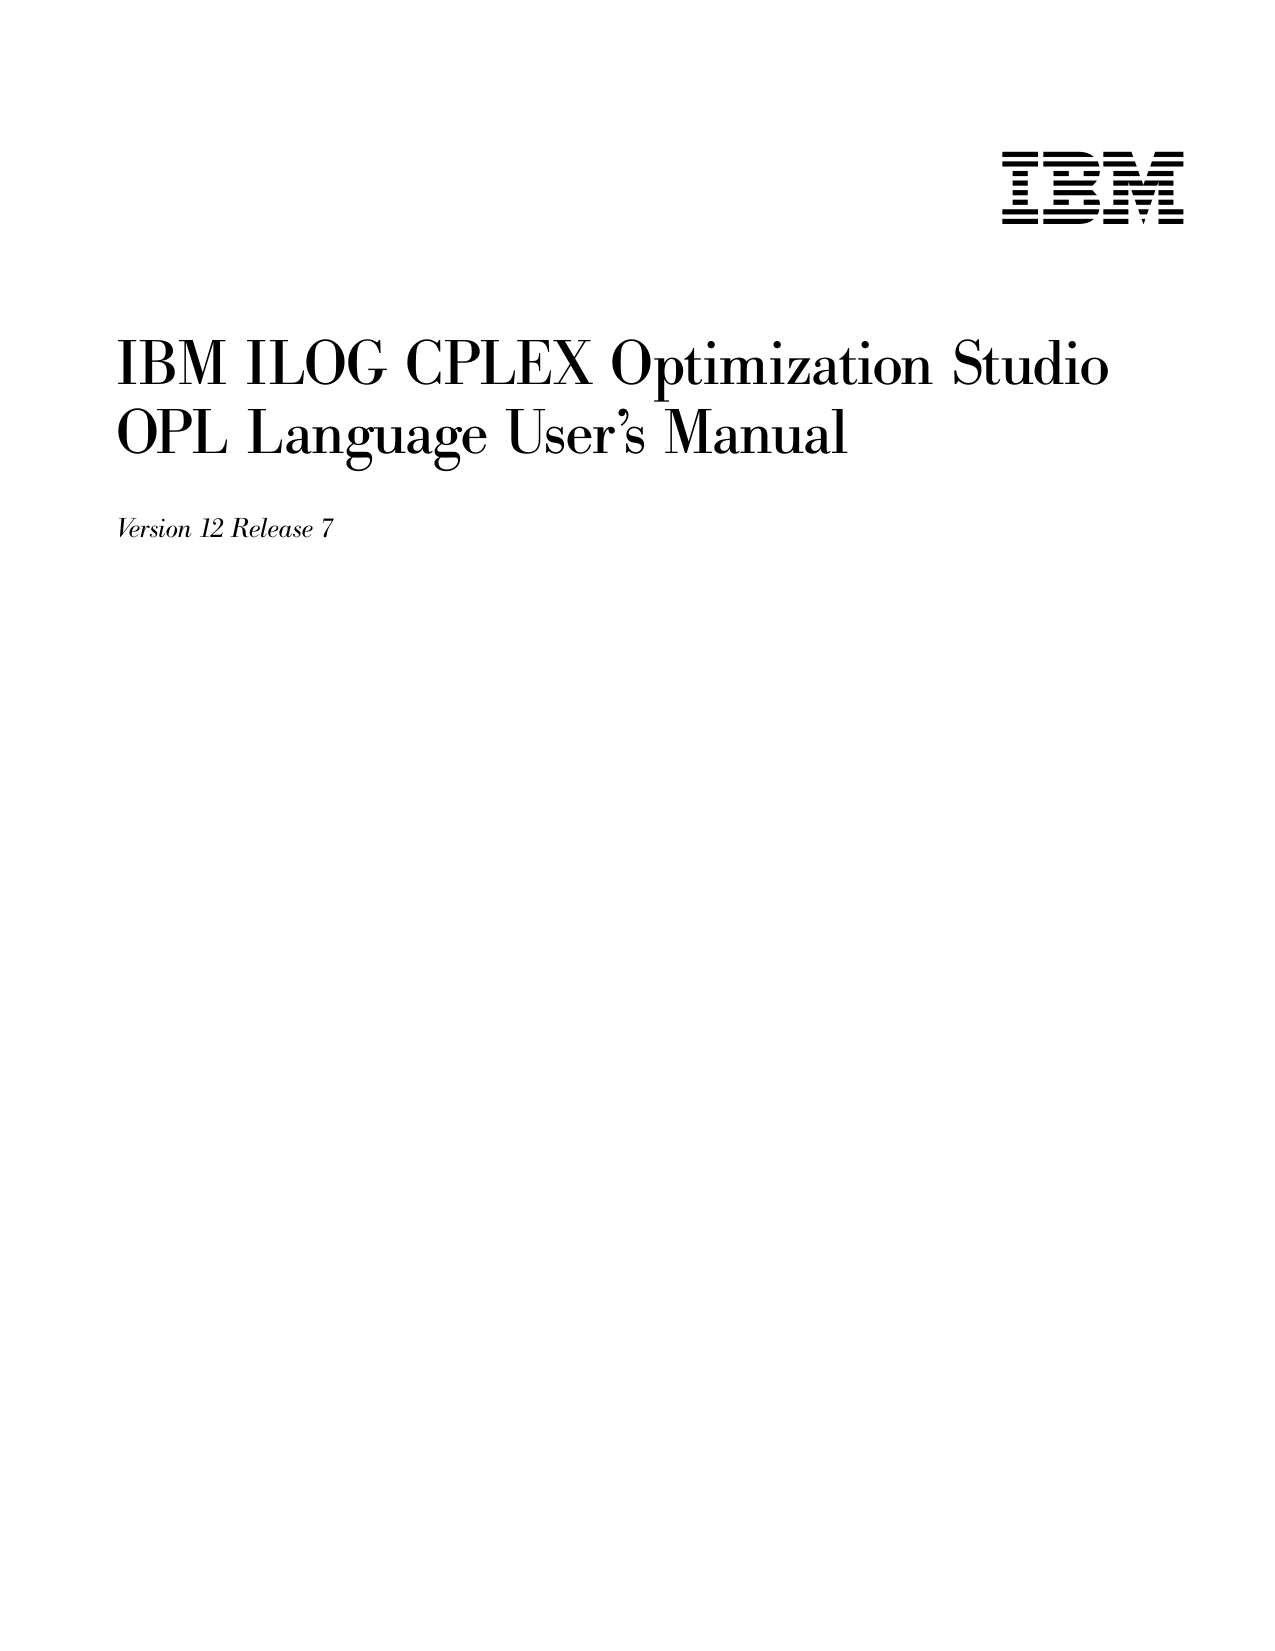 ibm ilog cplex optimization studio v12.8